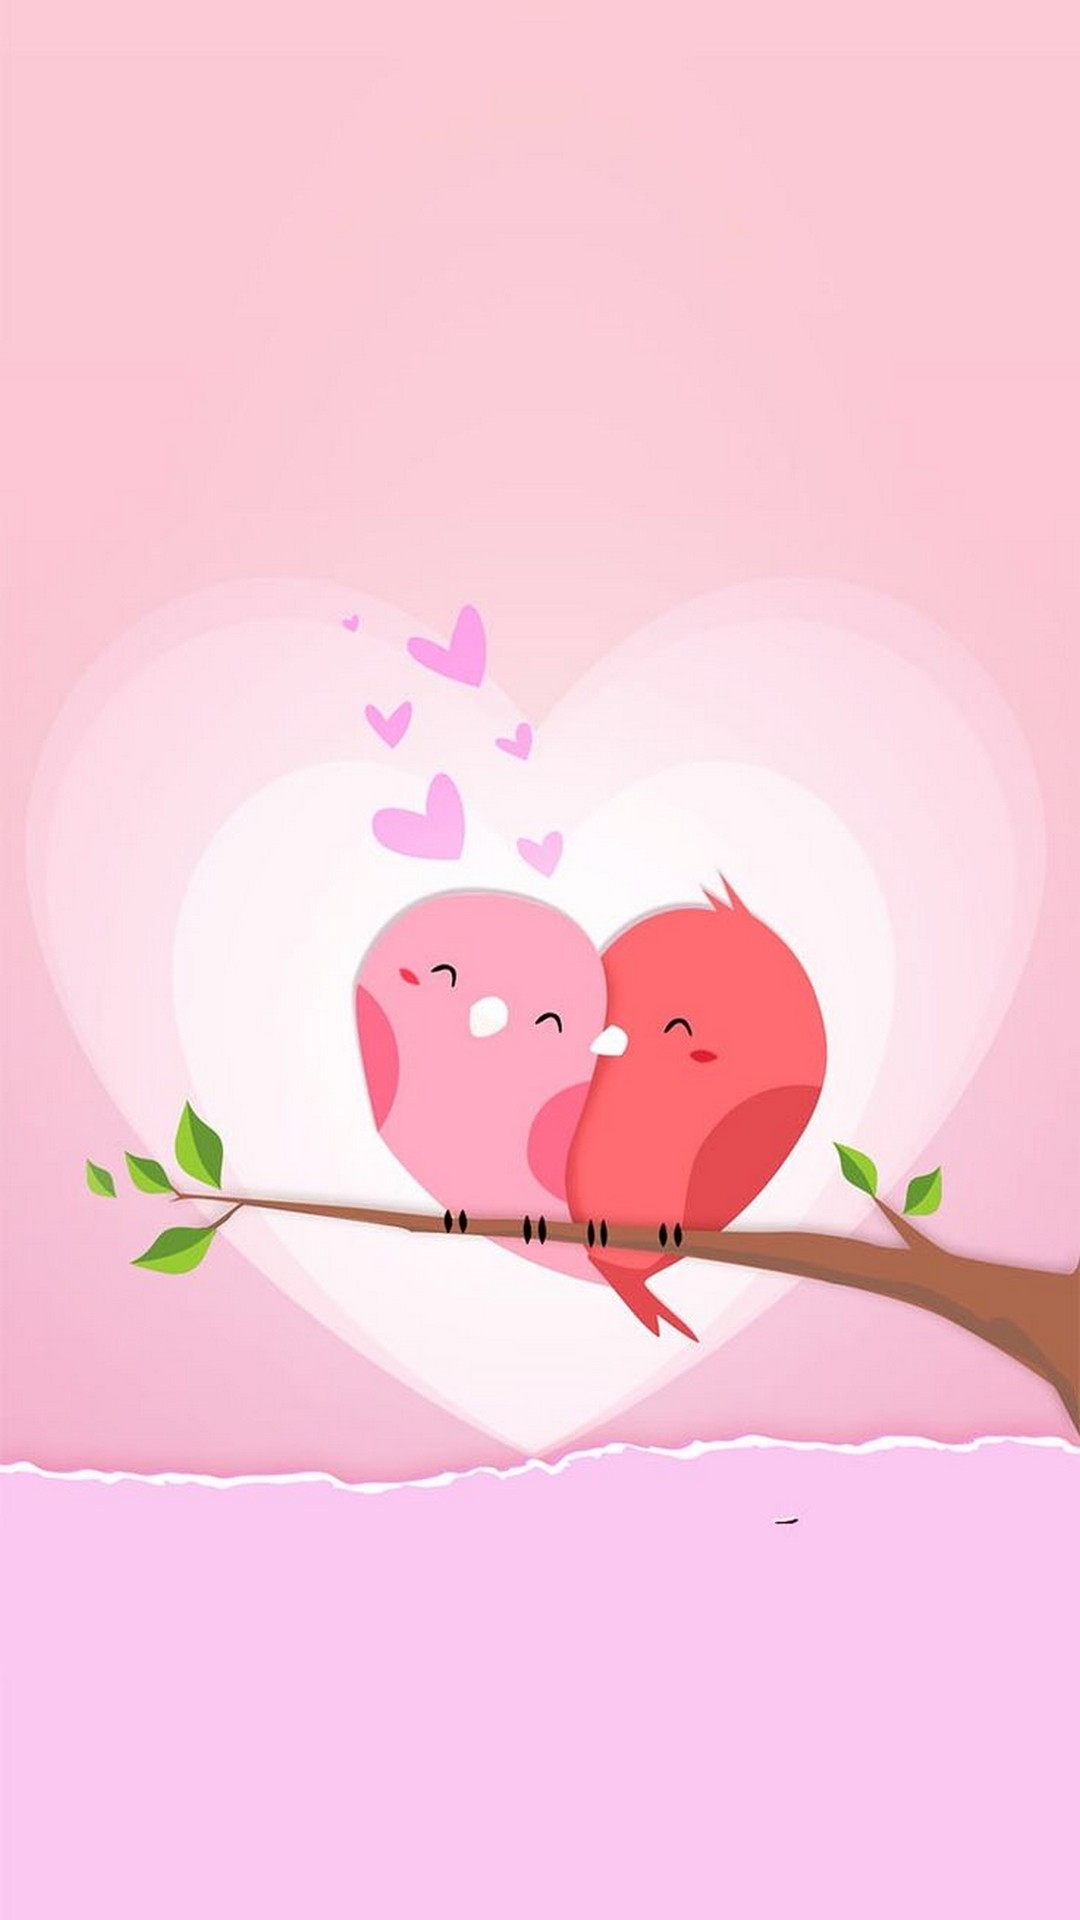 papel tapiz romántico,rosado,dibujos animados,ilustración,amor,corazón